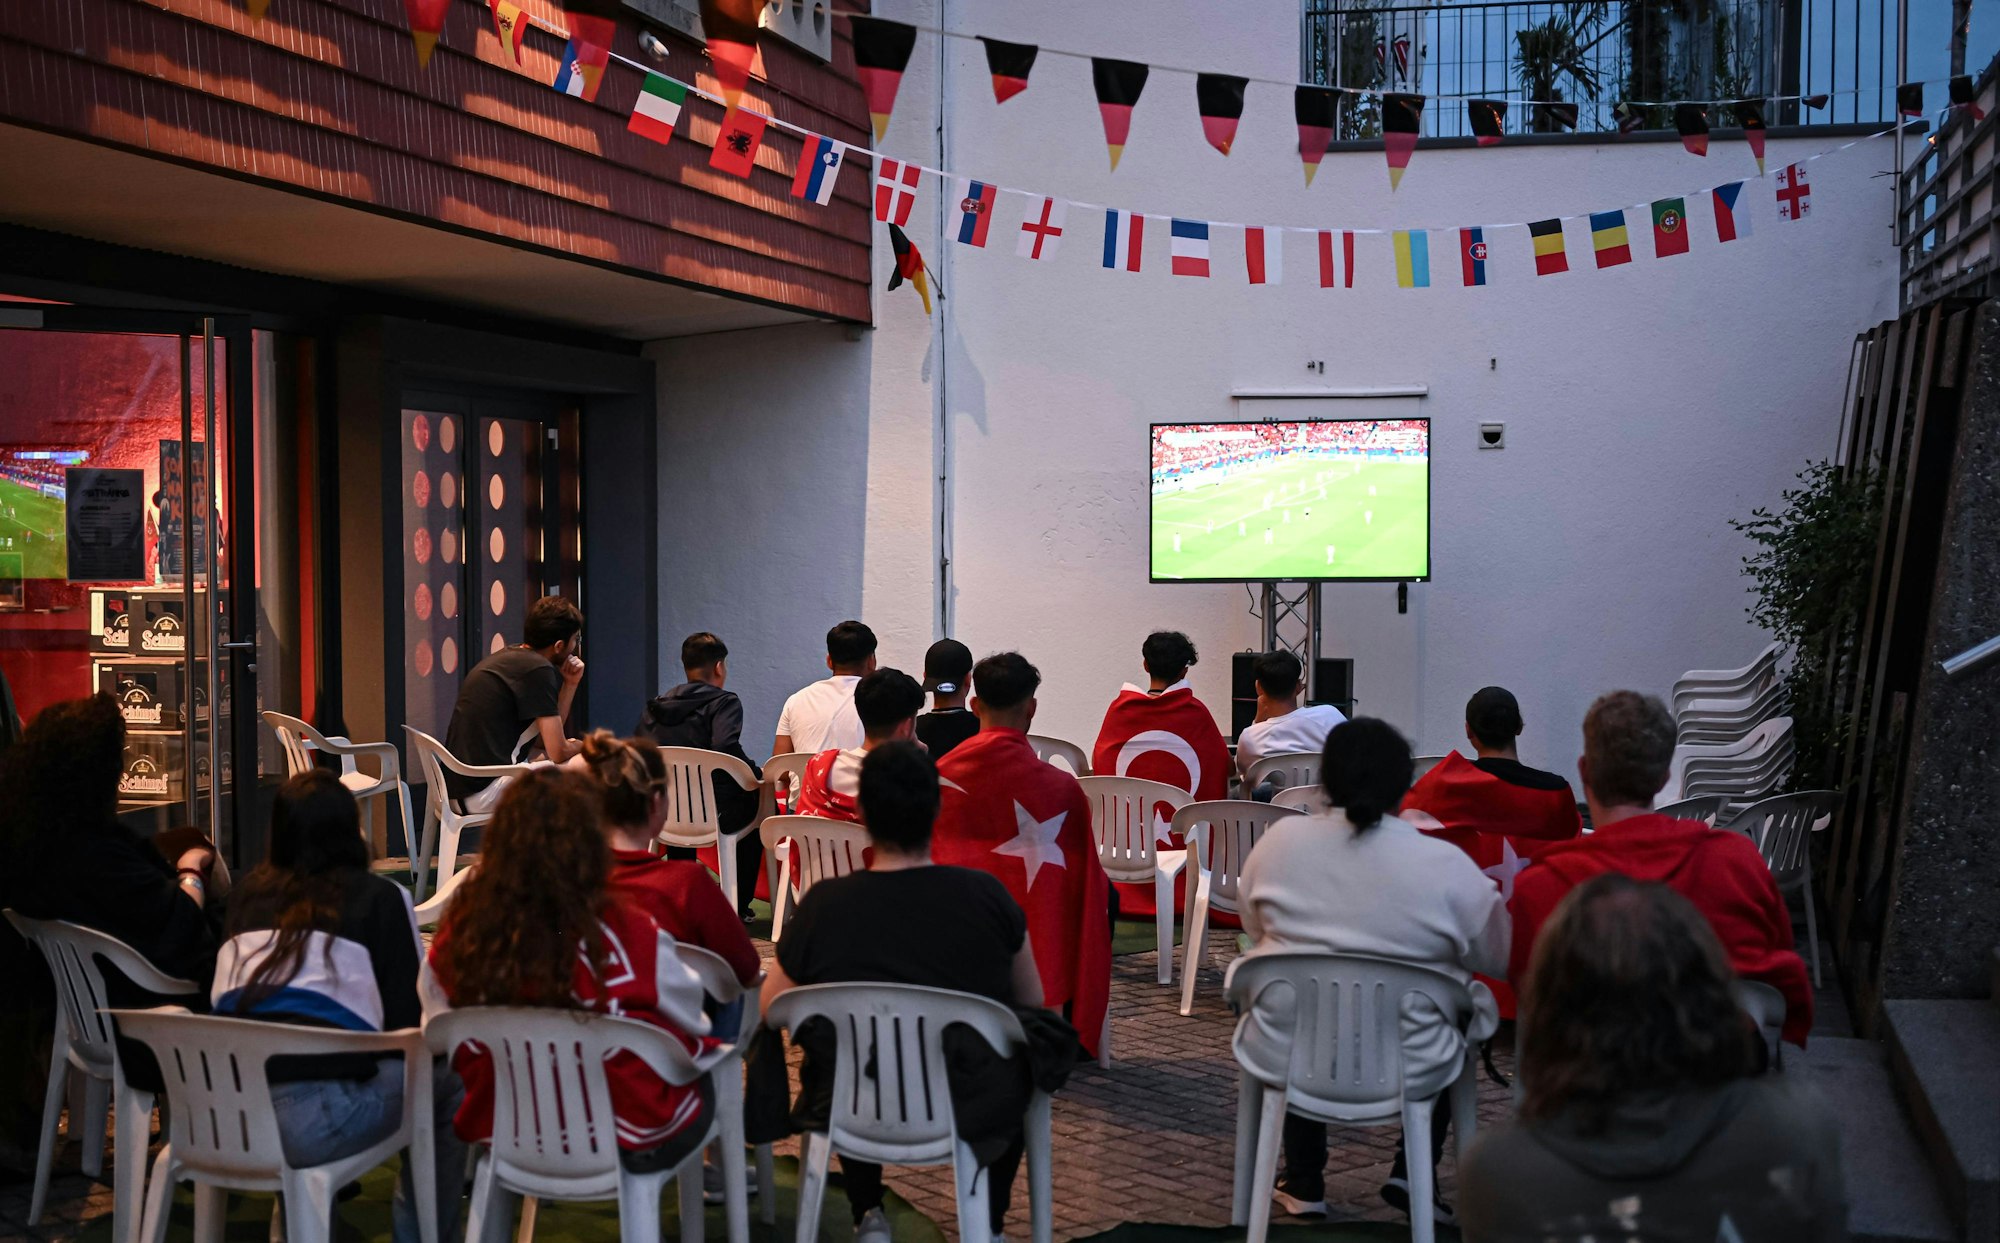 Türkische Fans schauen gemeinsam ein EM-Spiel.